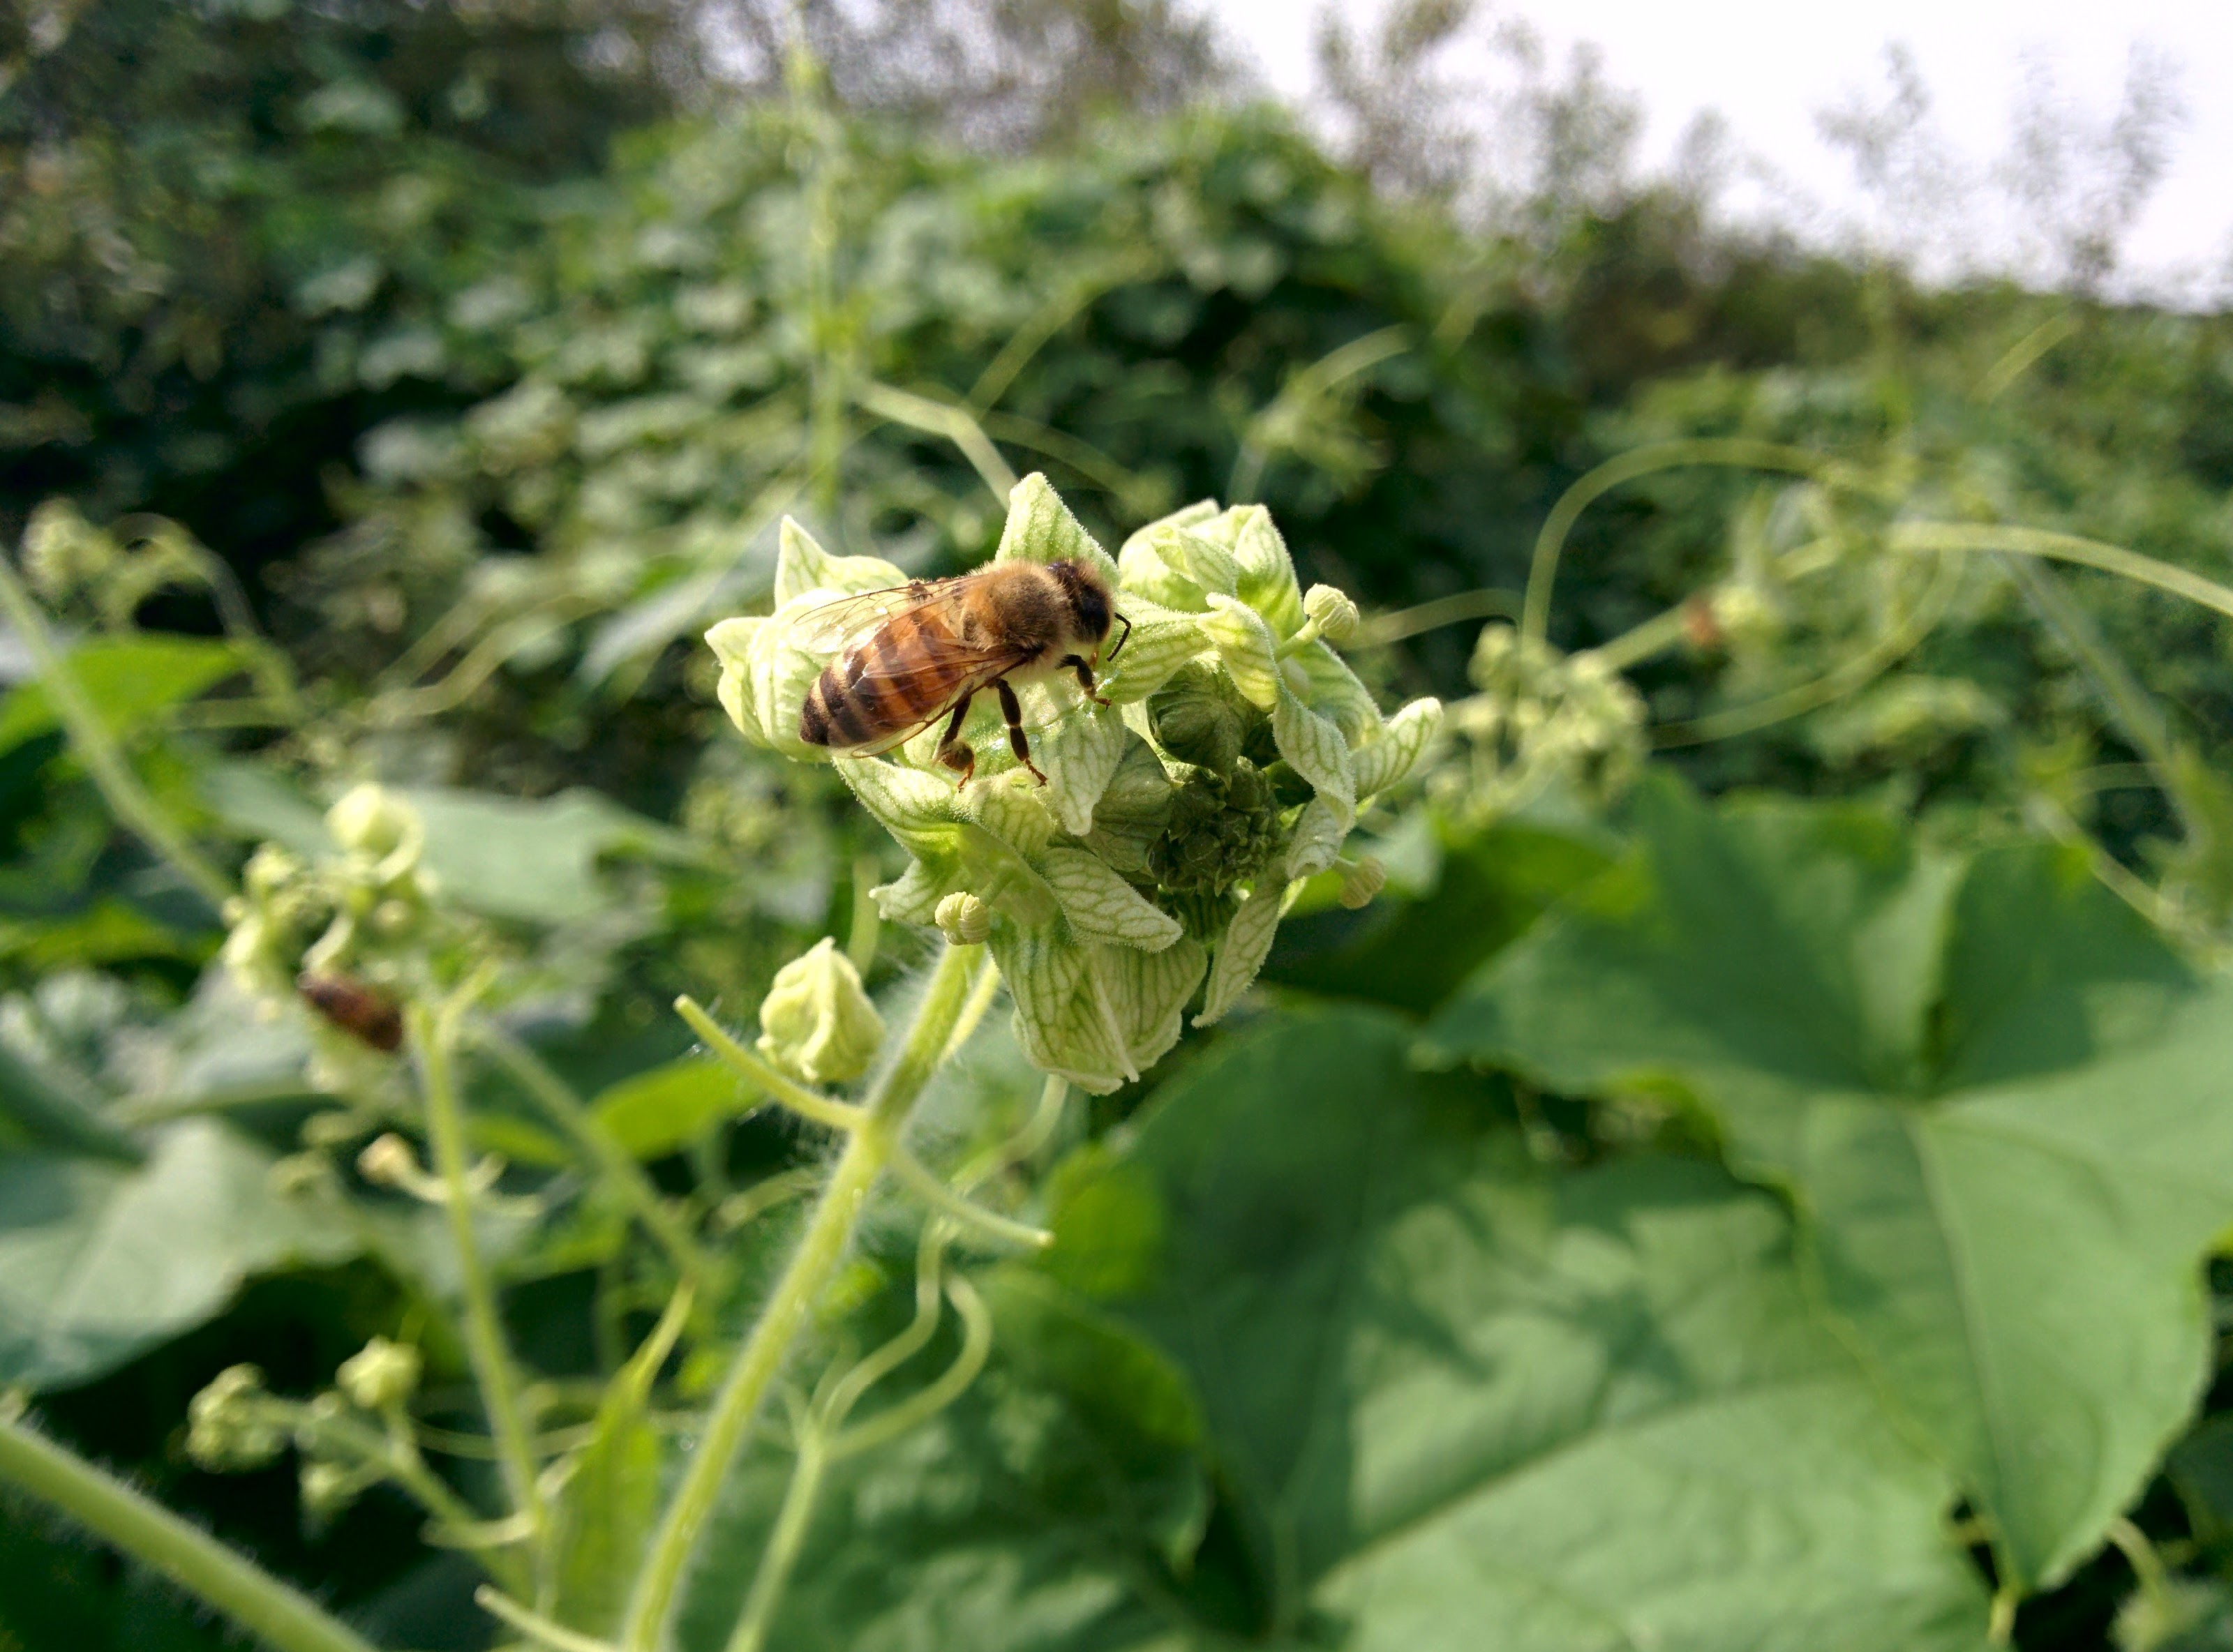 IMG_20150920_130143.jpg 오이넝쿨 닮은 덩굴식물 가시박 꽃, 꿀벌, 말벌